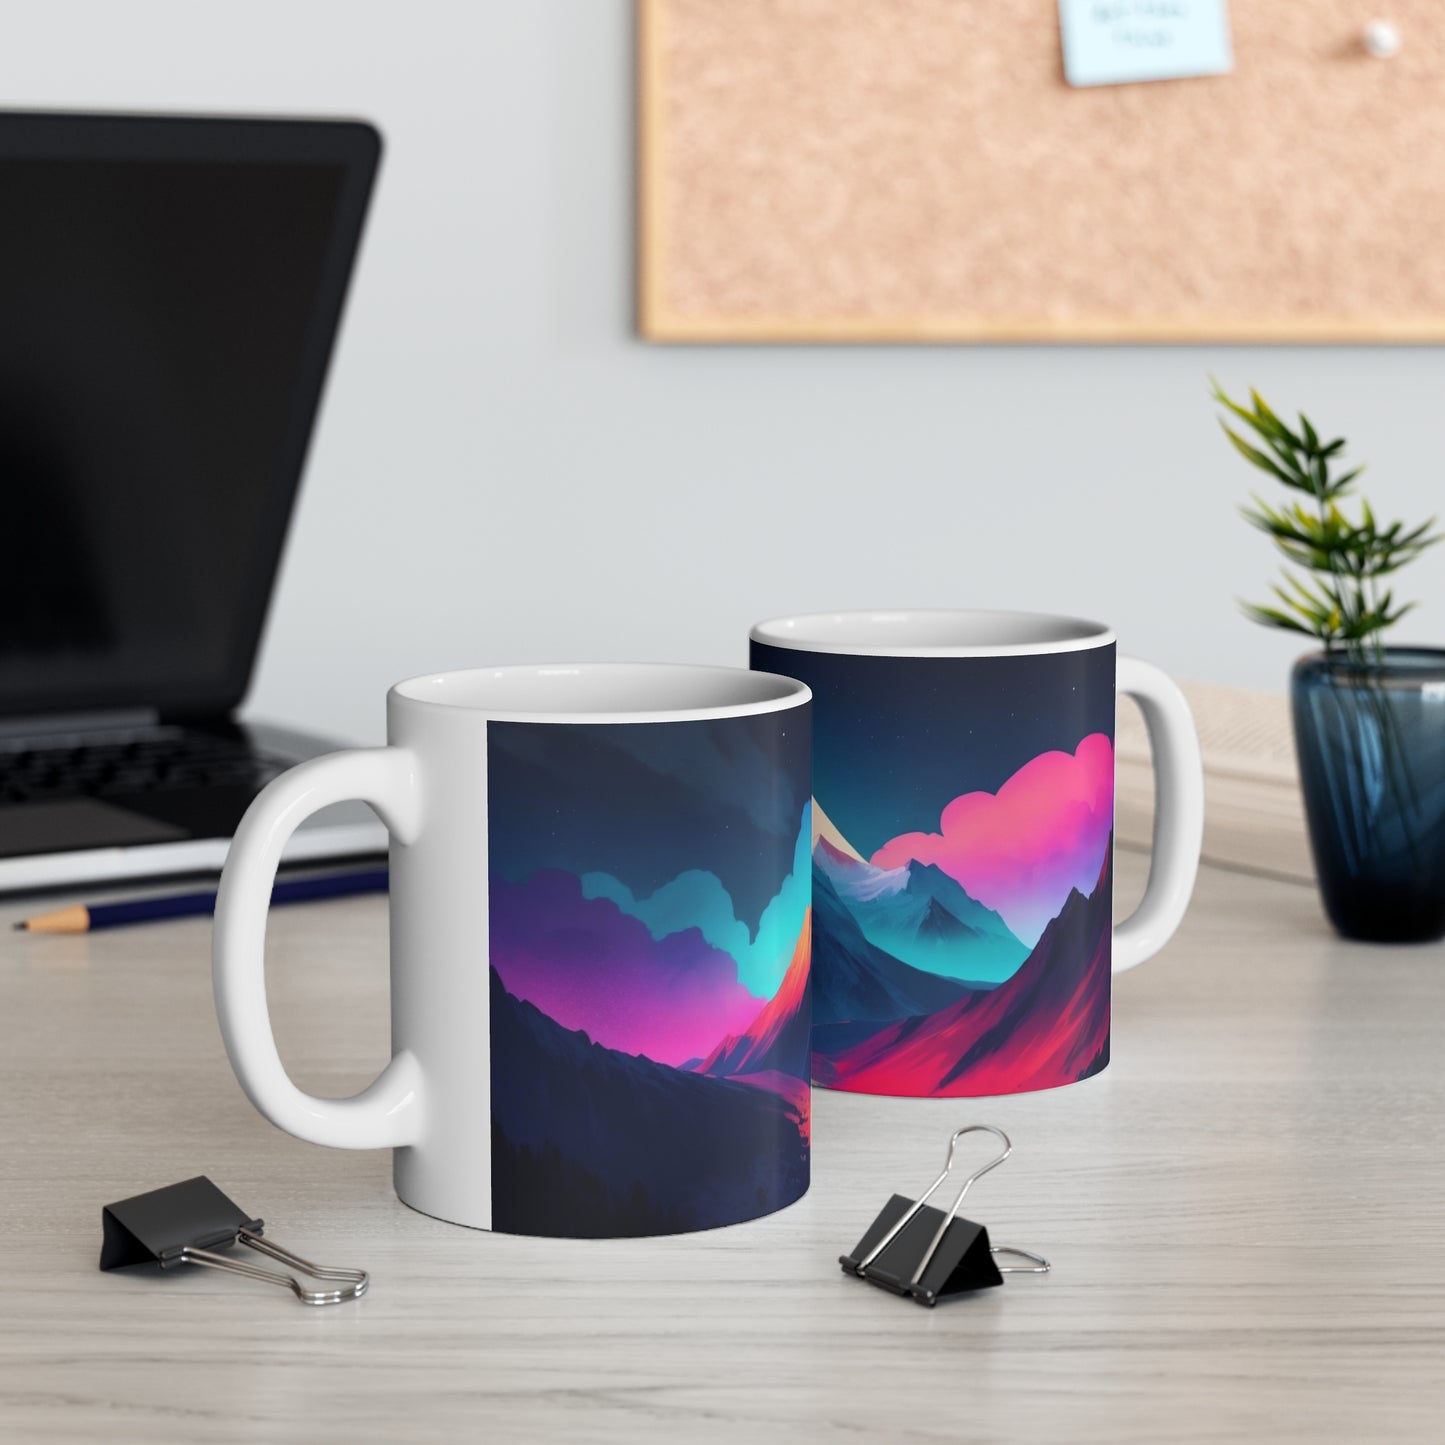 Colourful Mountain Mug - Ceramic Coffee Mug 11oz